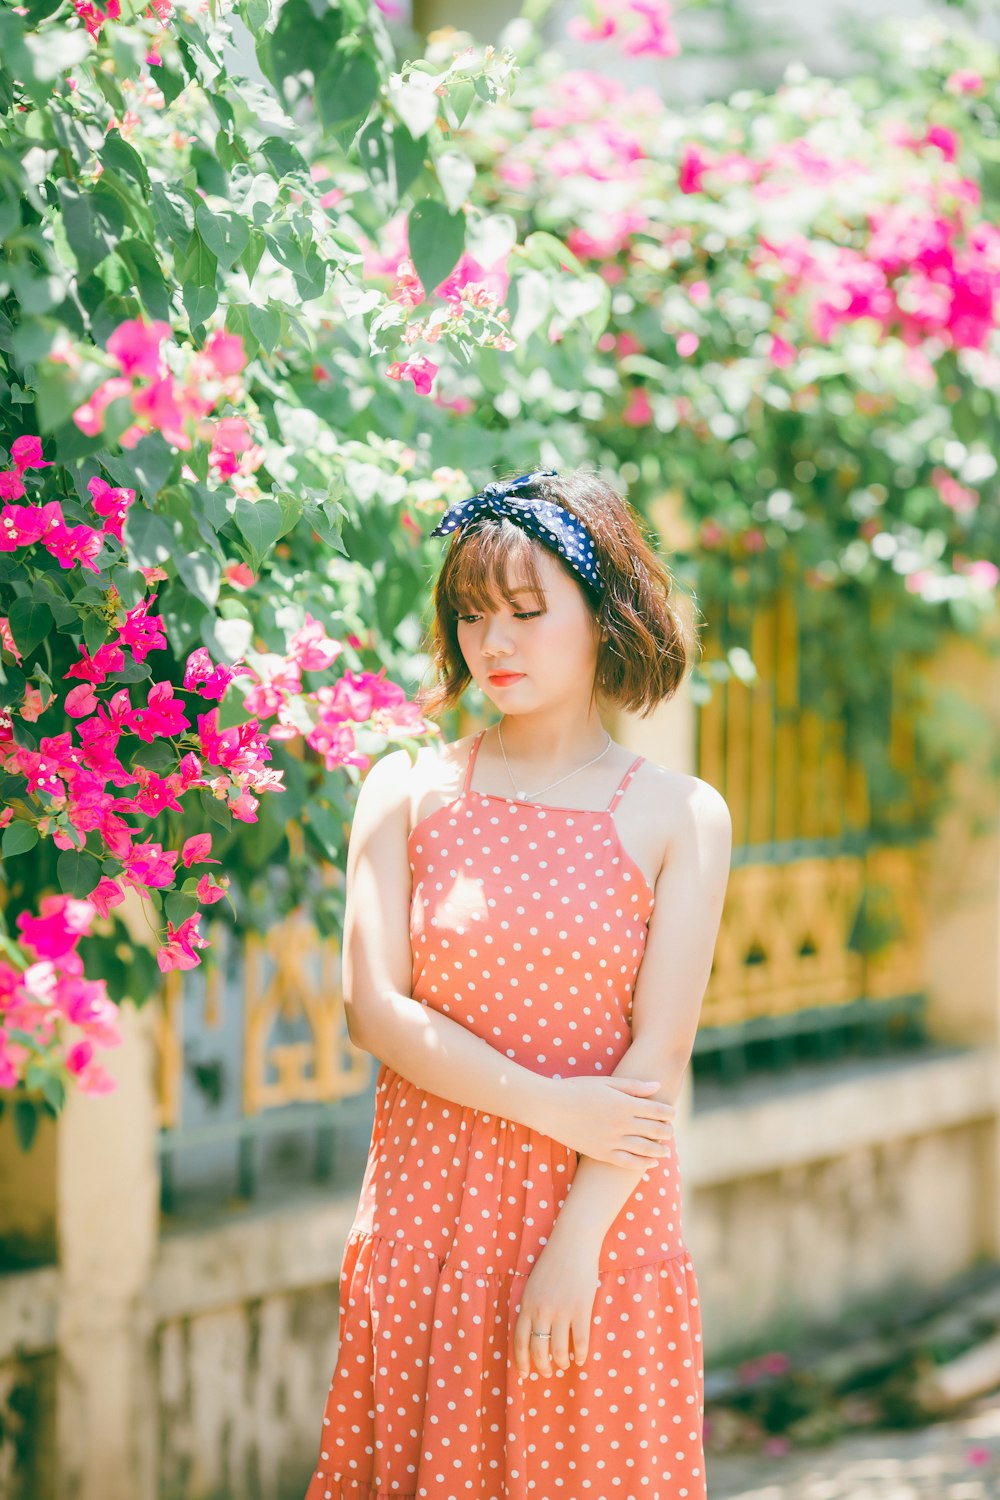 Mujer en vestido de tirantes de espagueti de lunares naranjas de pie cerca de plantas rosas y verdes